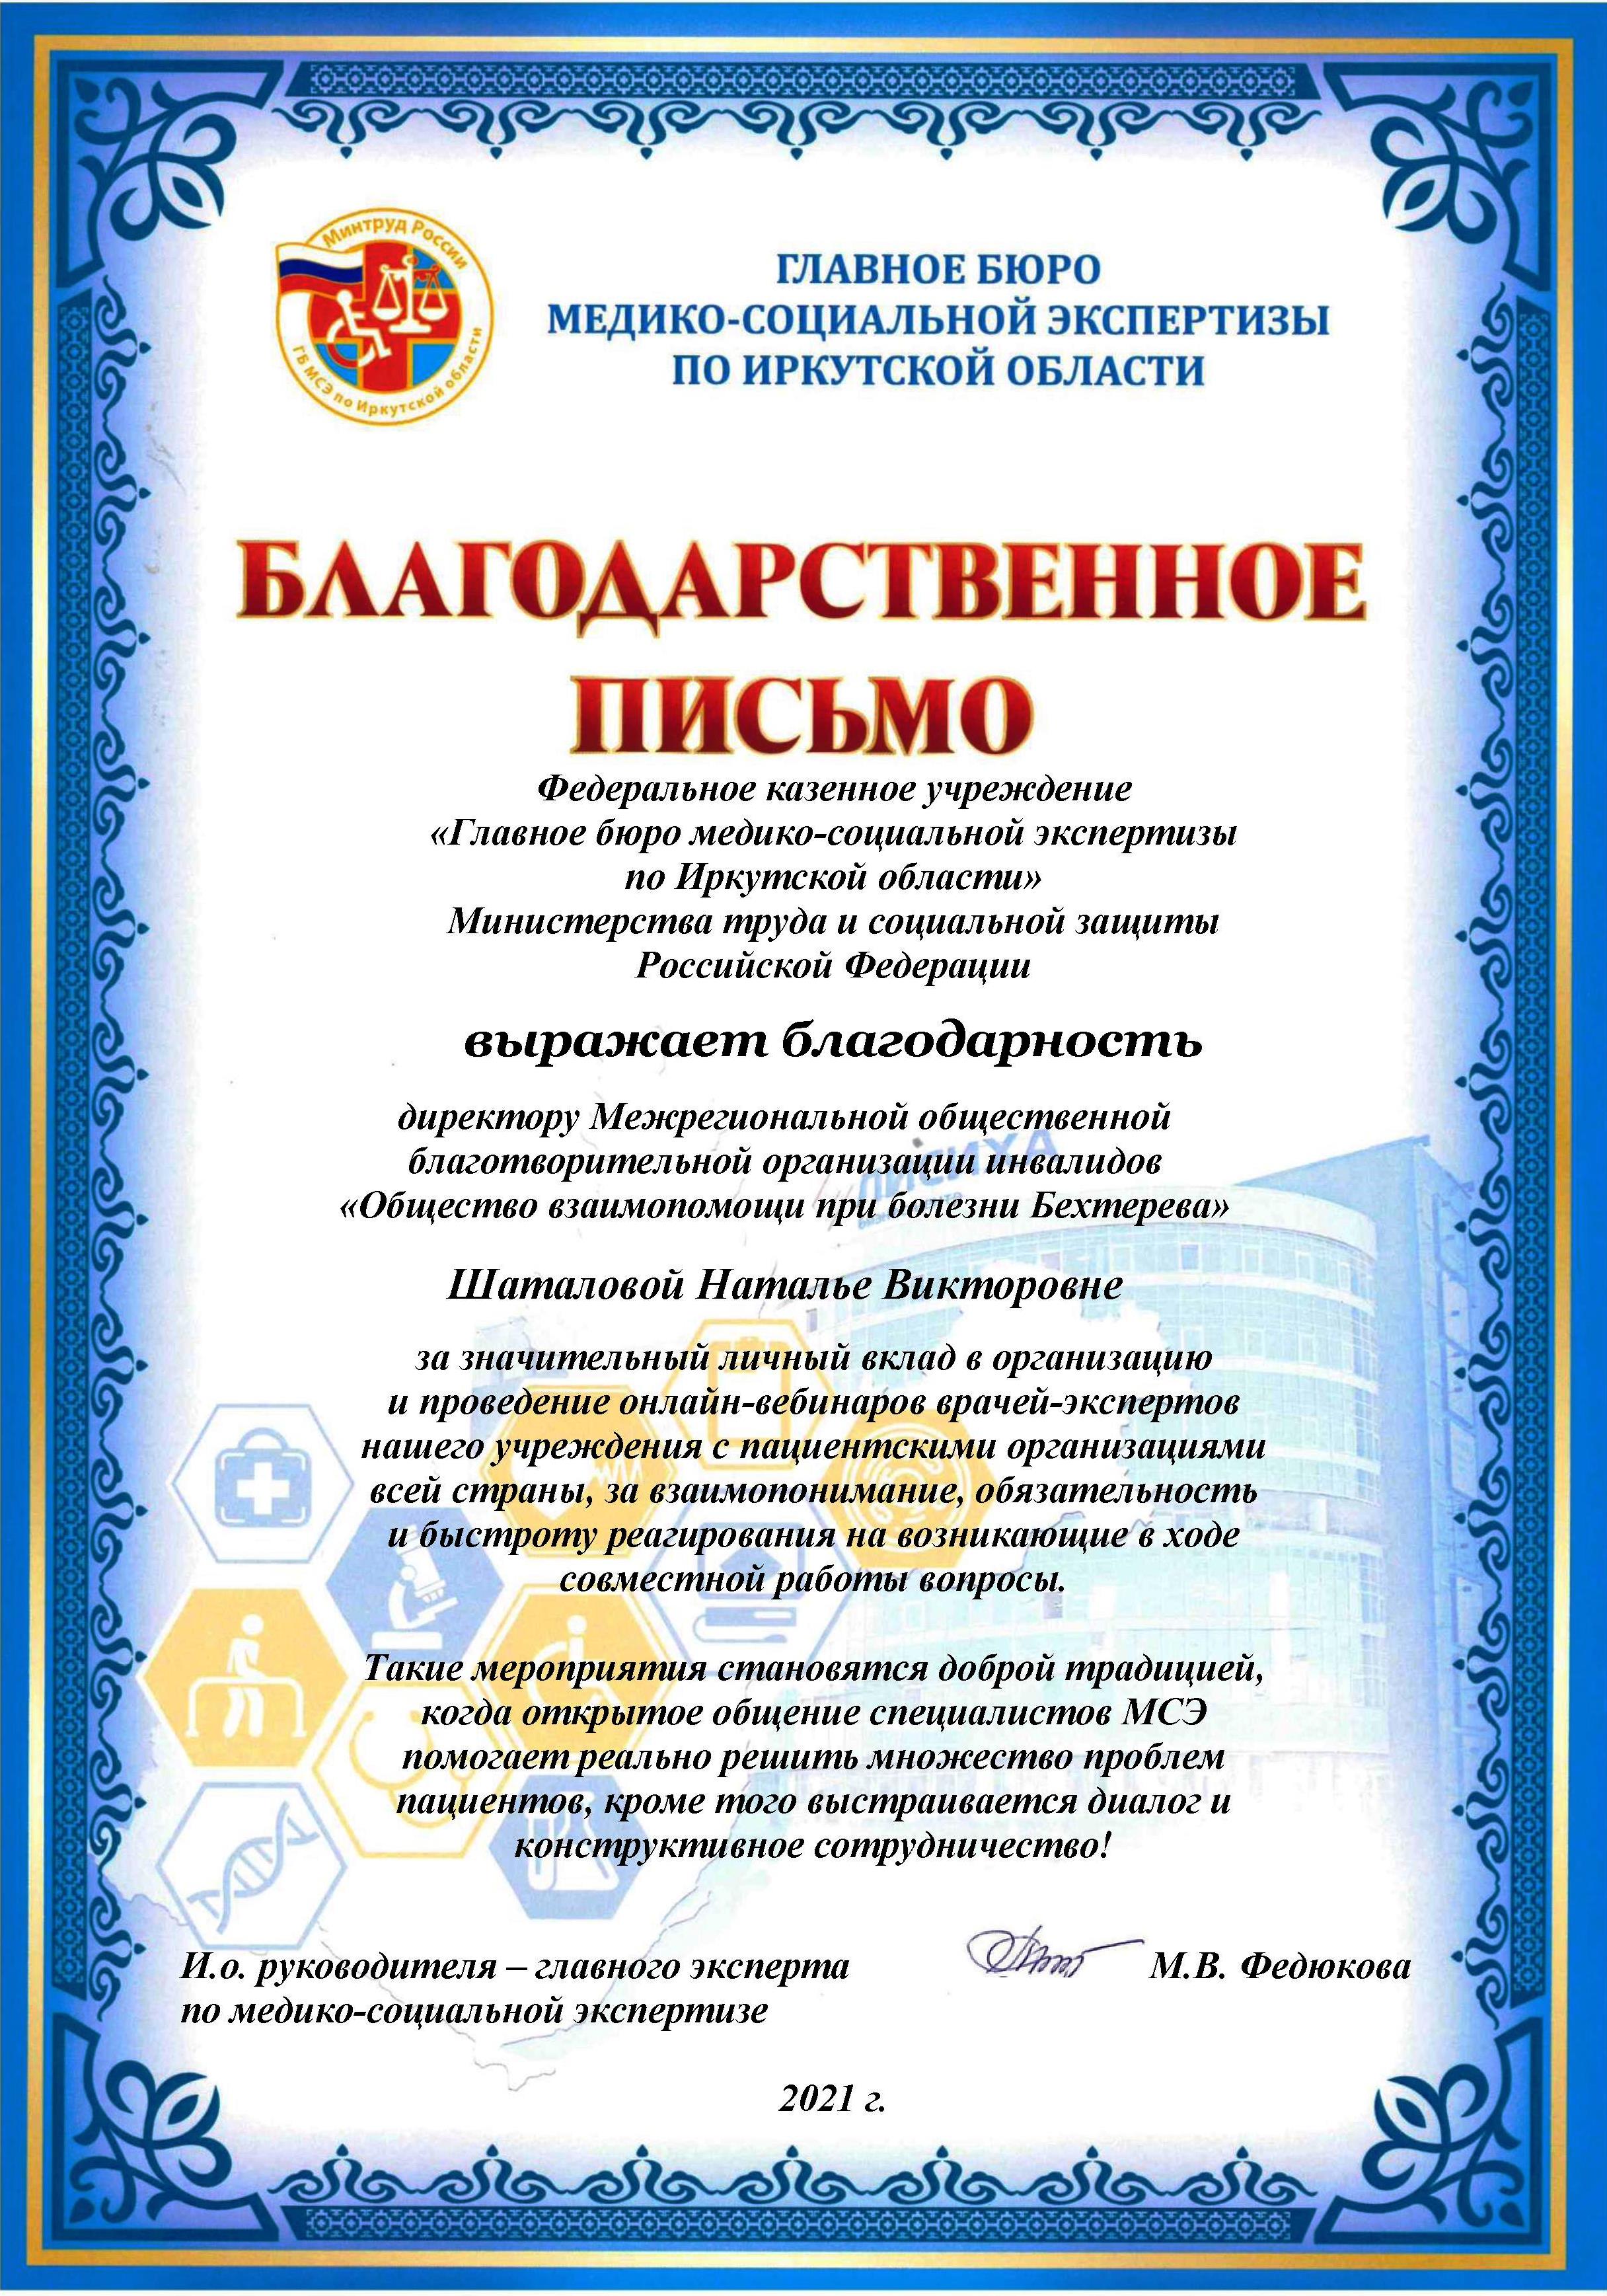 Благодарственное письмо - Главное бюро медико-социальной экспертизы по Иркутской области